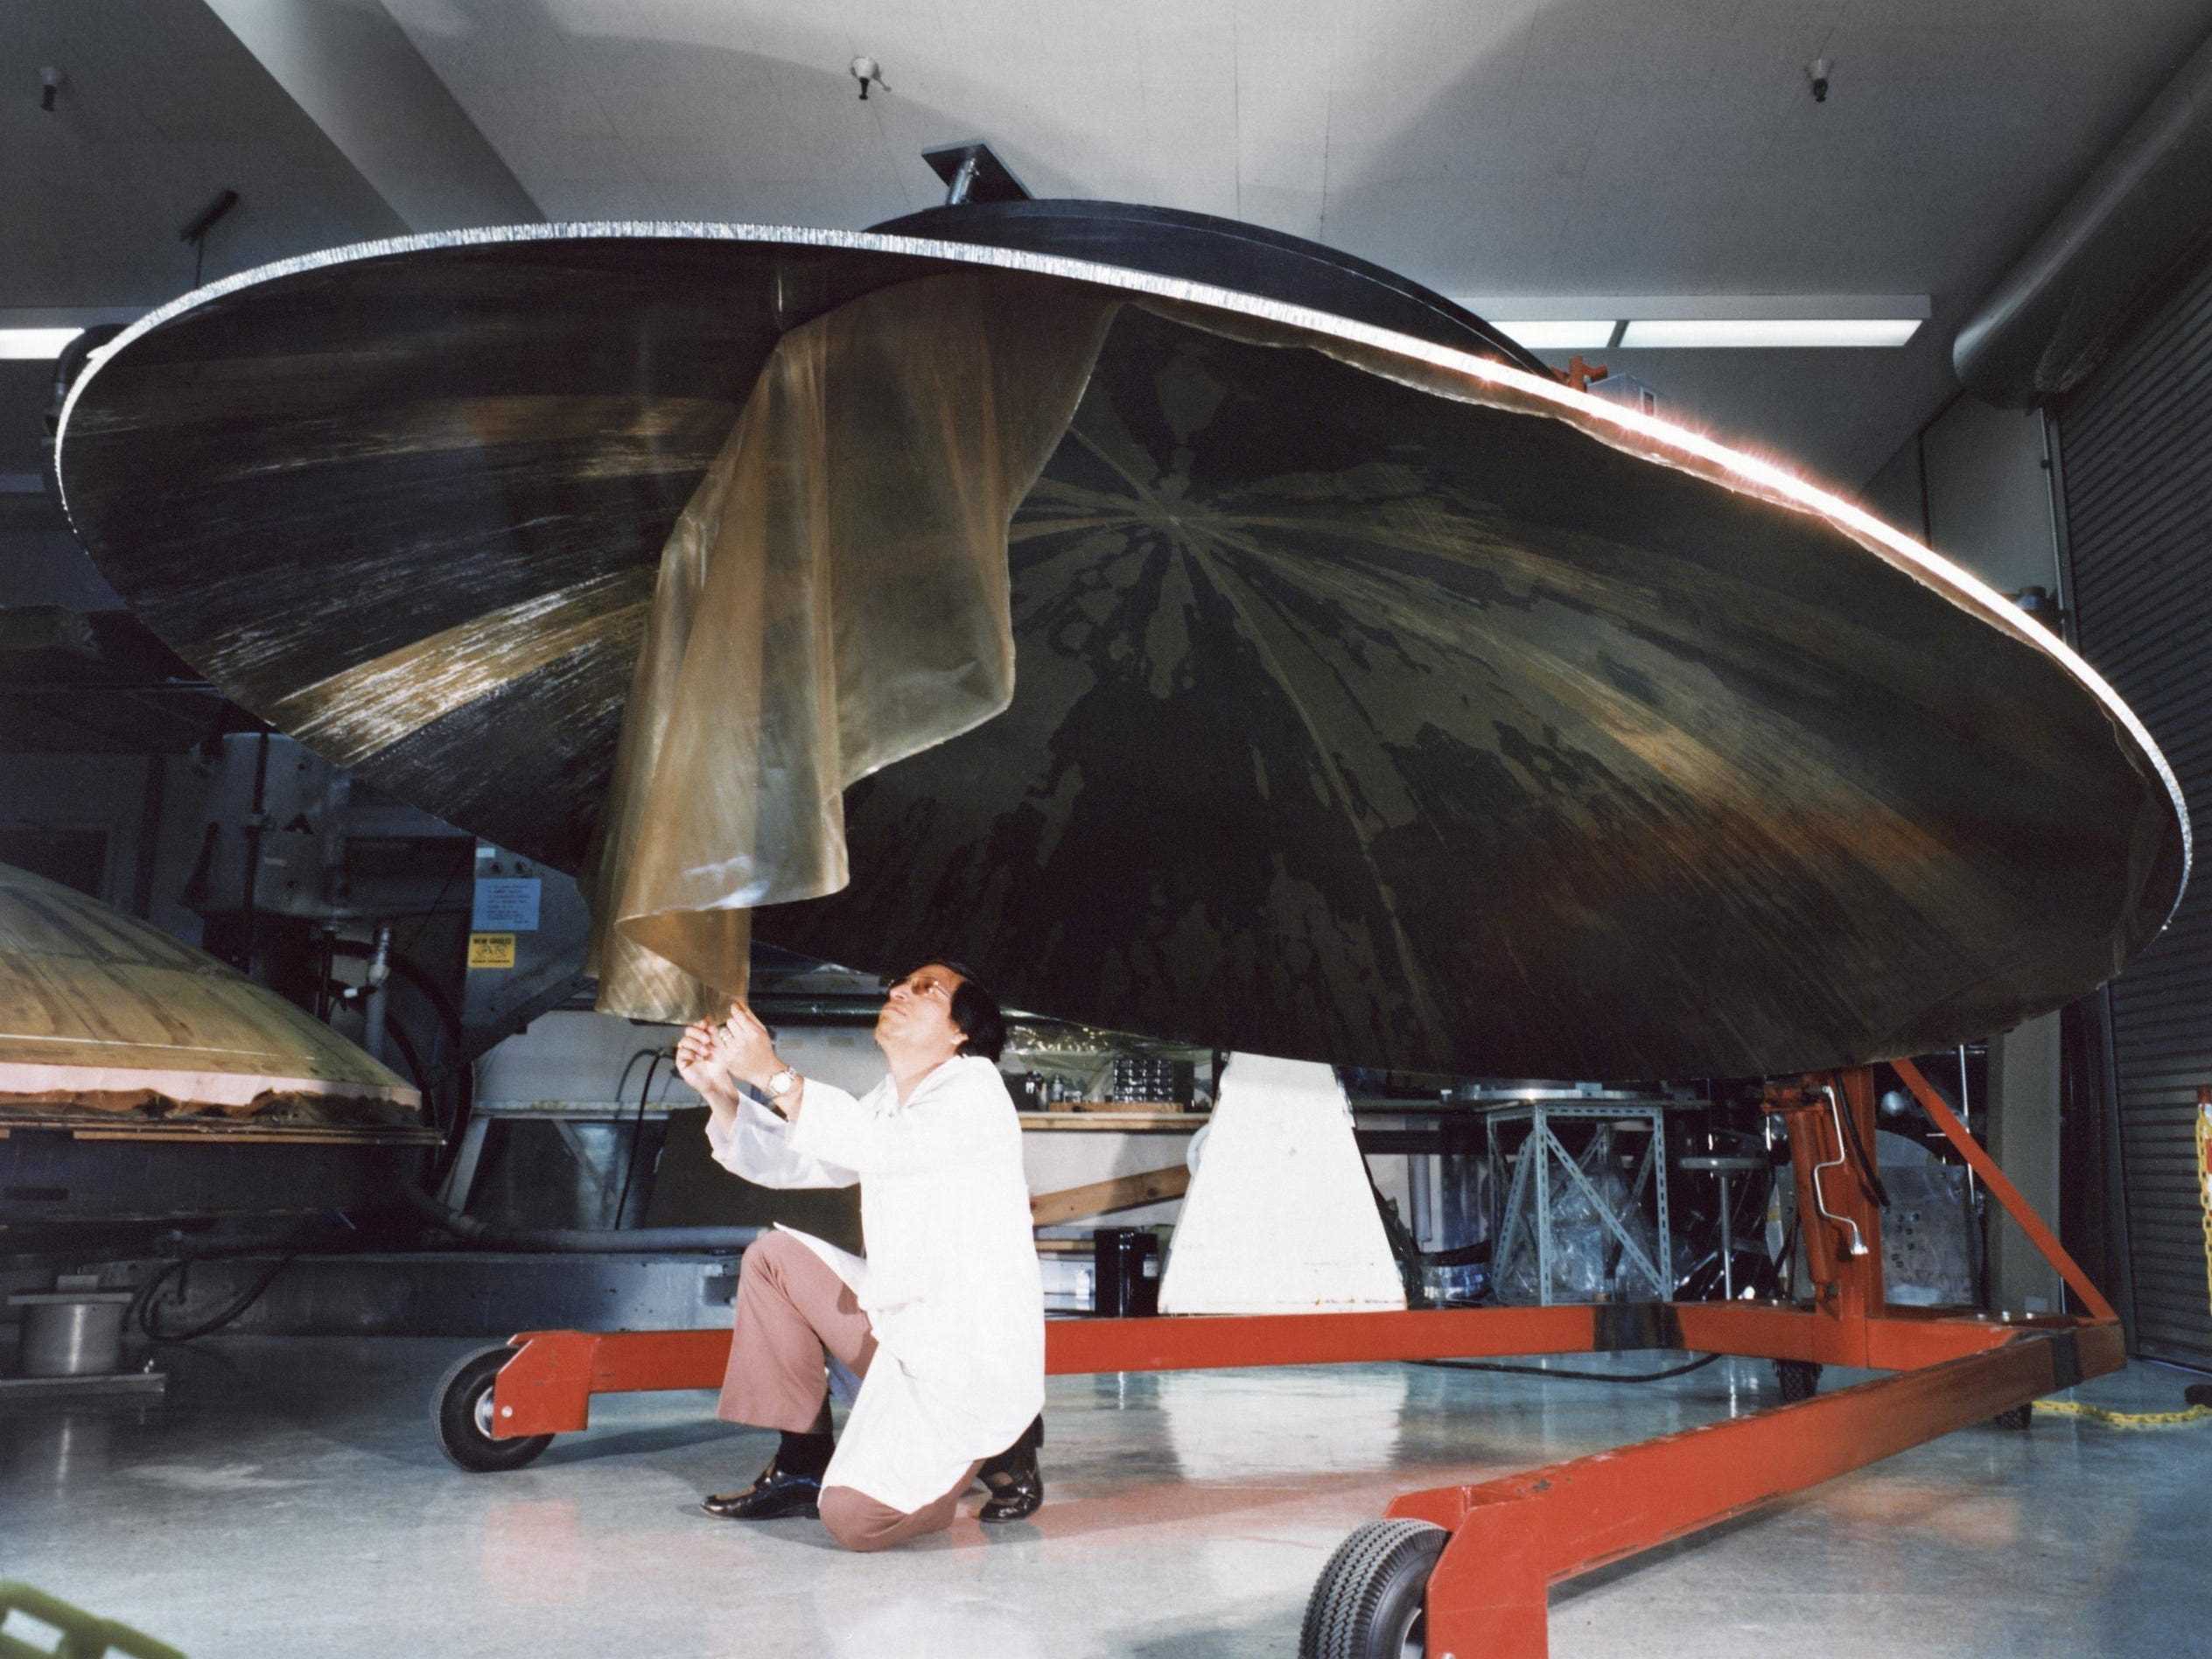 Dieses Archivfoto zeigt einen Ingenieur, der an der Konstruktion einer großen, schüsselförmigen Voyager-Hochleistungsantenne arbeitet.  Das Bild wurde am 9. Juli 1976 aufgenommen.